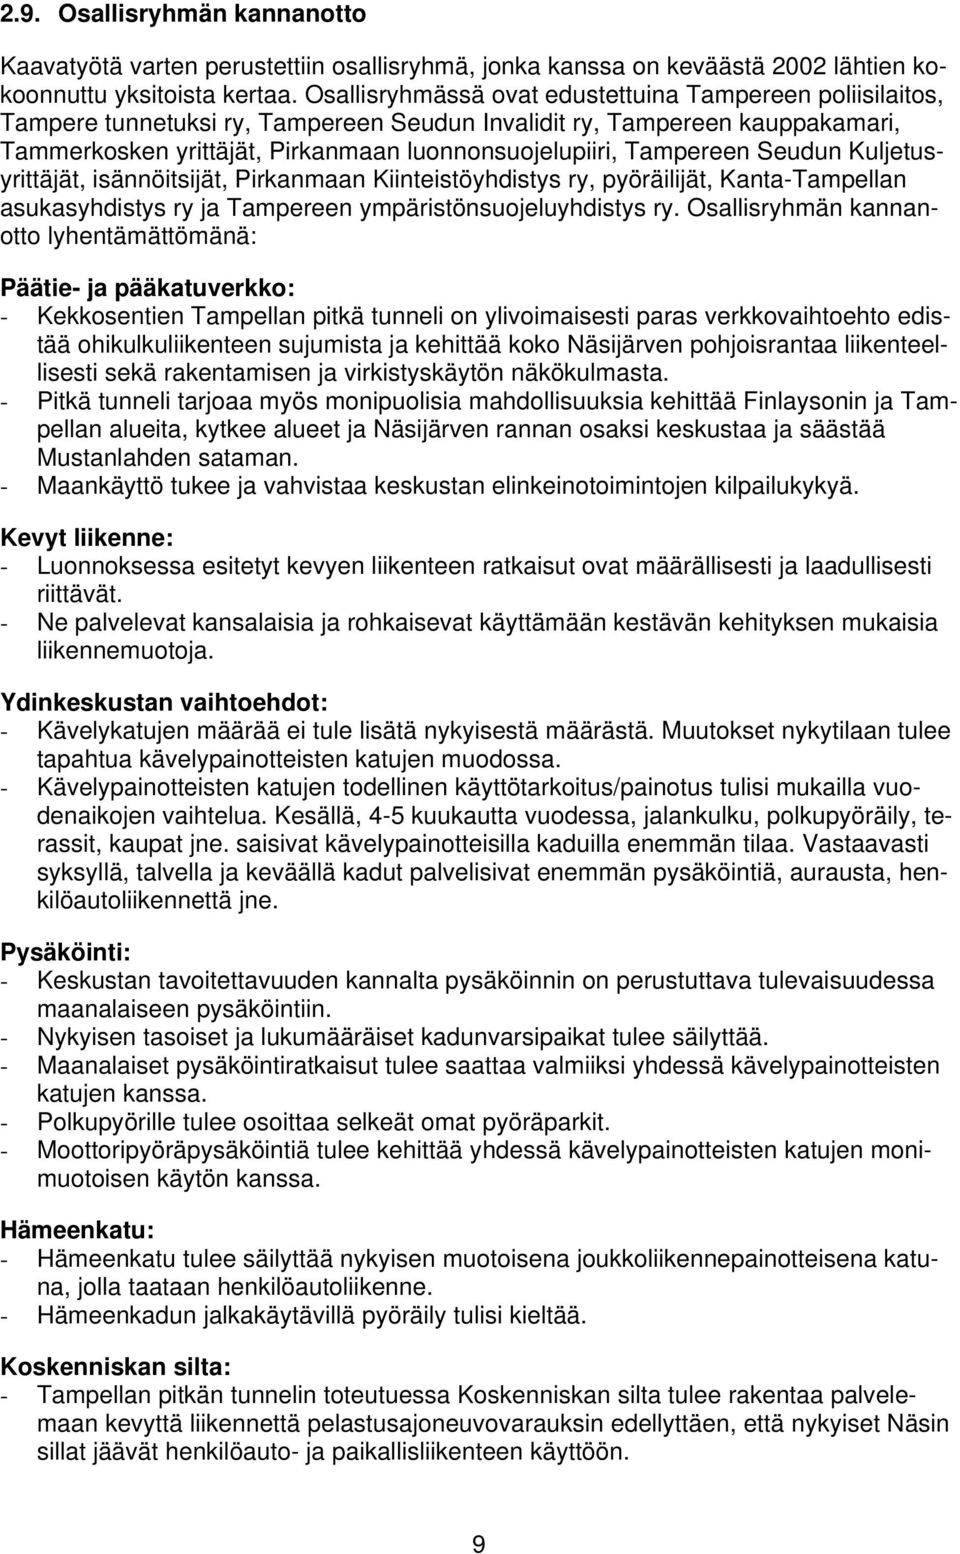 Tampereen Seudun Kuljetusyrittäjät, isännöitsijät, Pirkanmaan Kiinteistöyhdistys ry, pyöräilijät, Kanta-Tampellan asukasyhdistys ry ja Tampereen ympäristönsuojeluyhdistys ry.